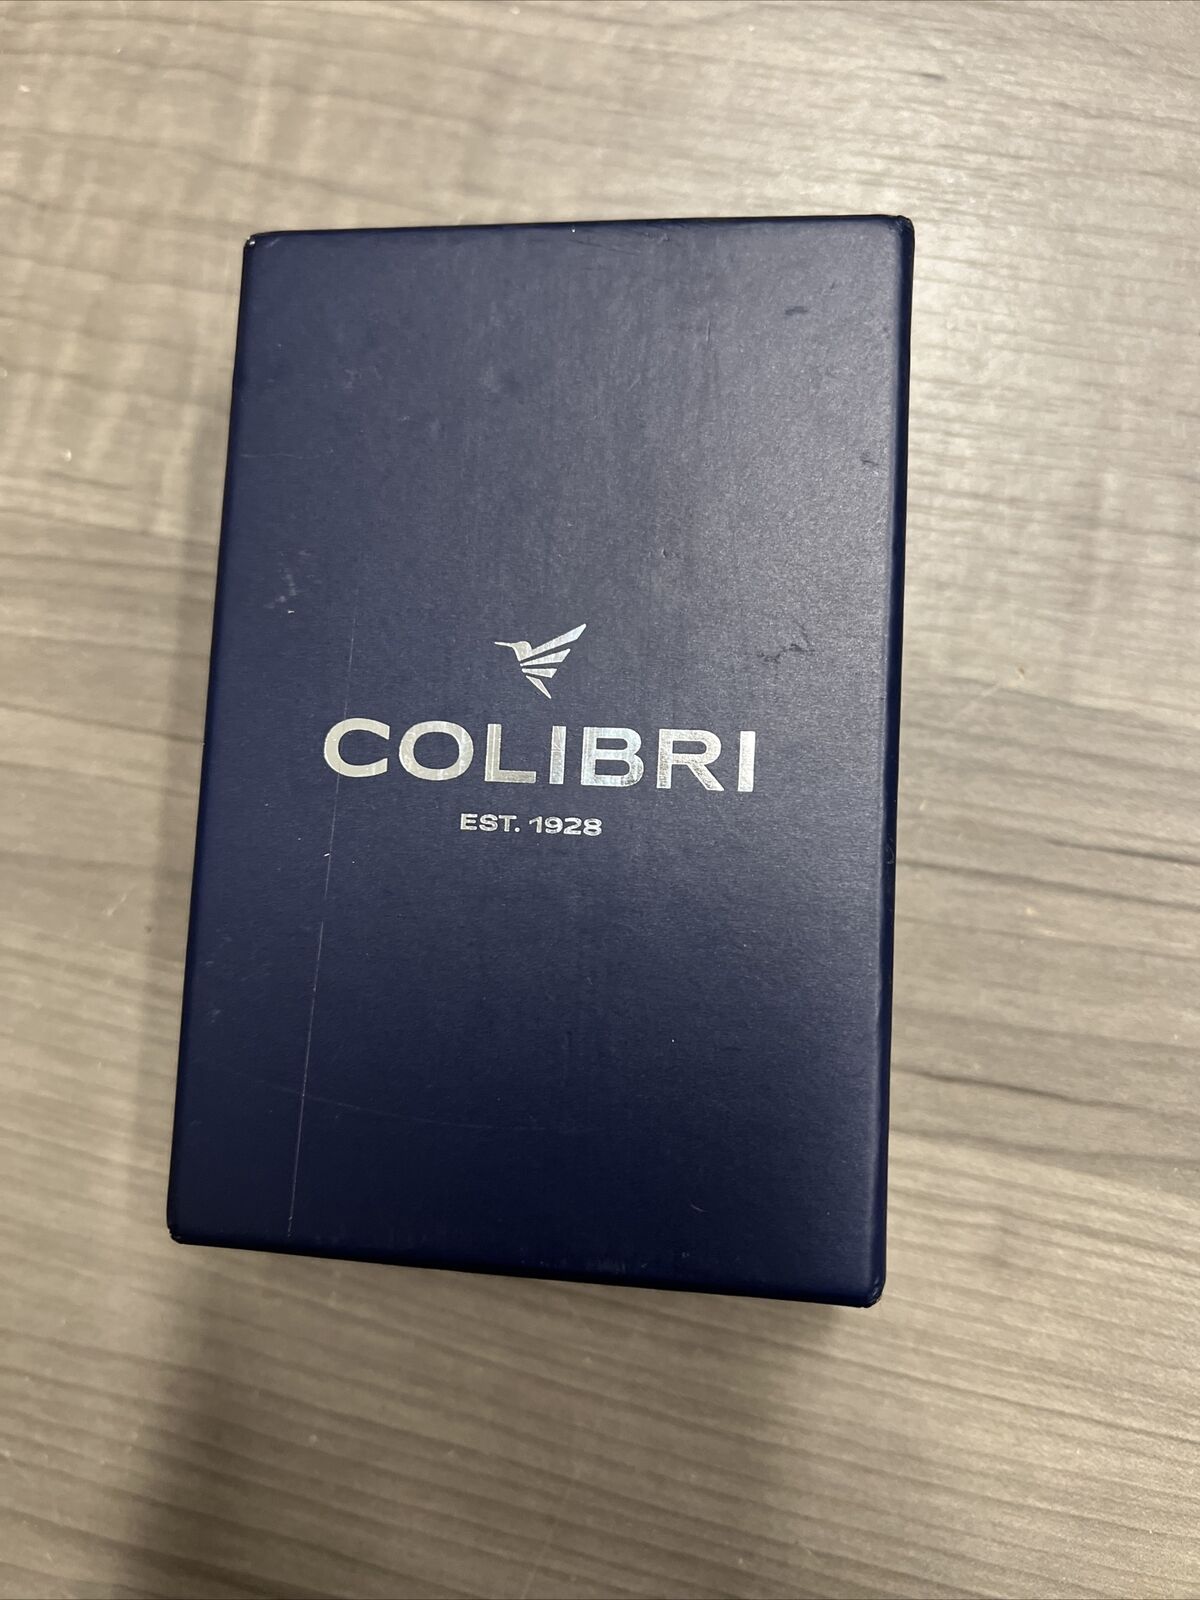 Colibri Premium SV-Cut 2 in 1 Cigar Cutter Navy Blue